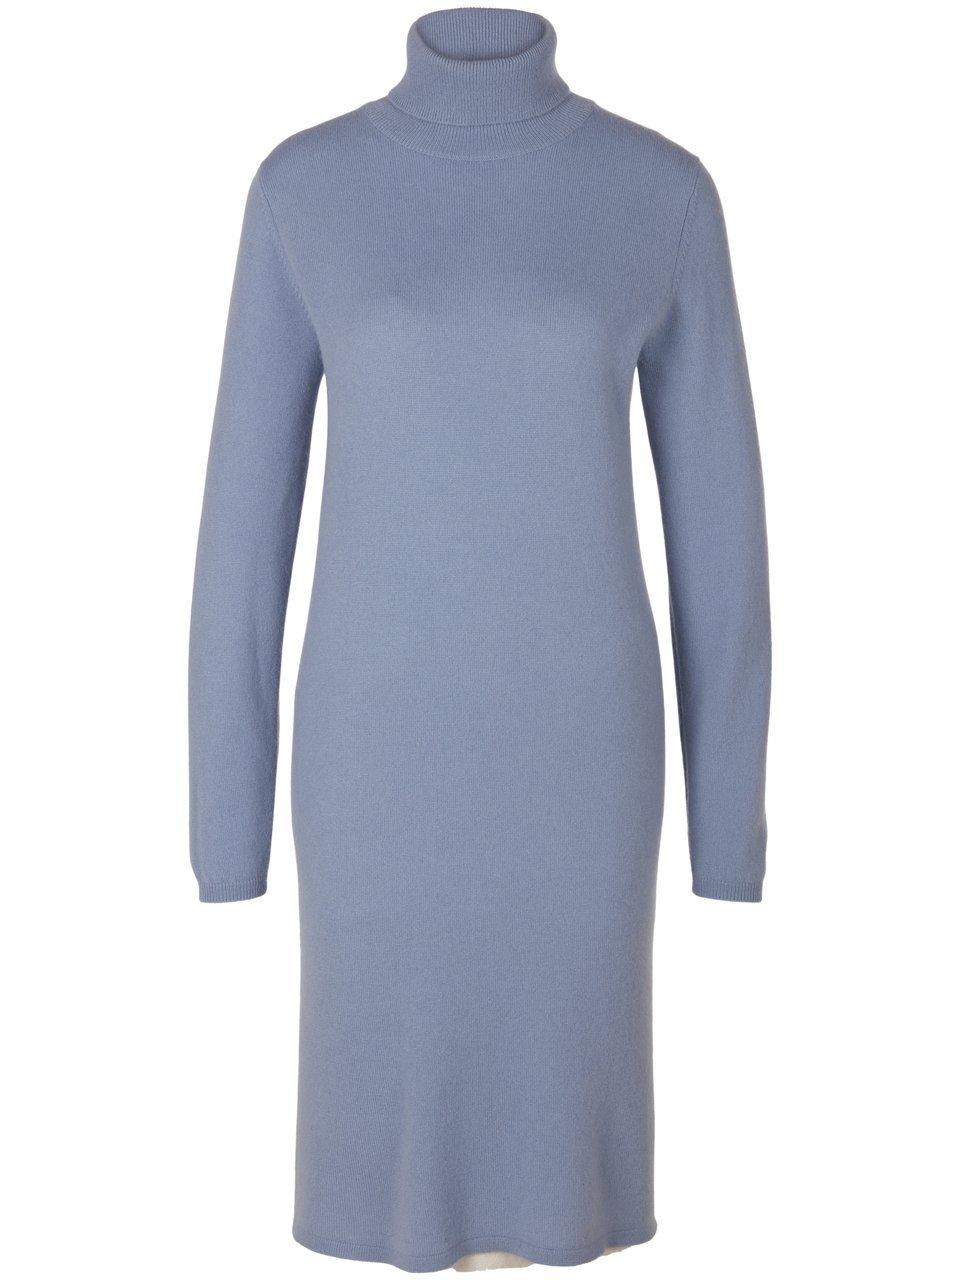 Gebreide jurk Van include blauw